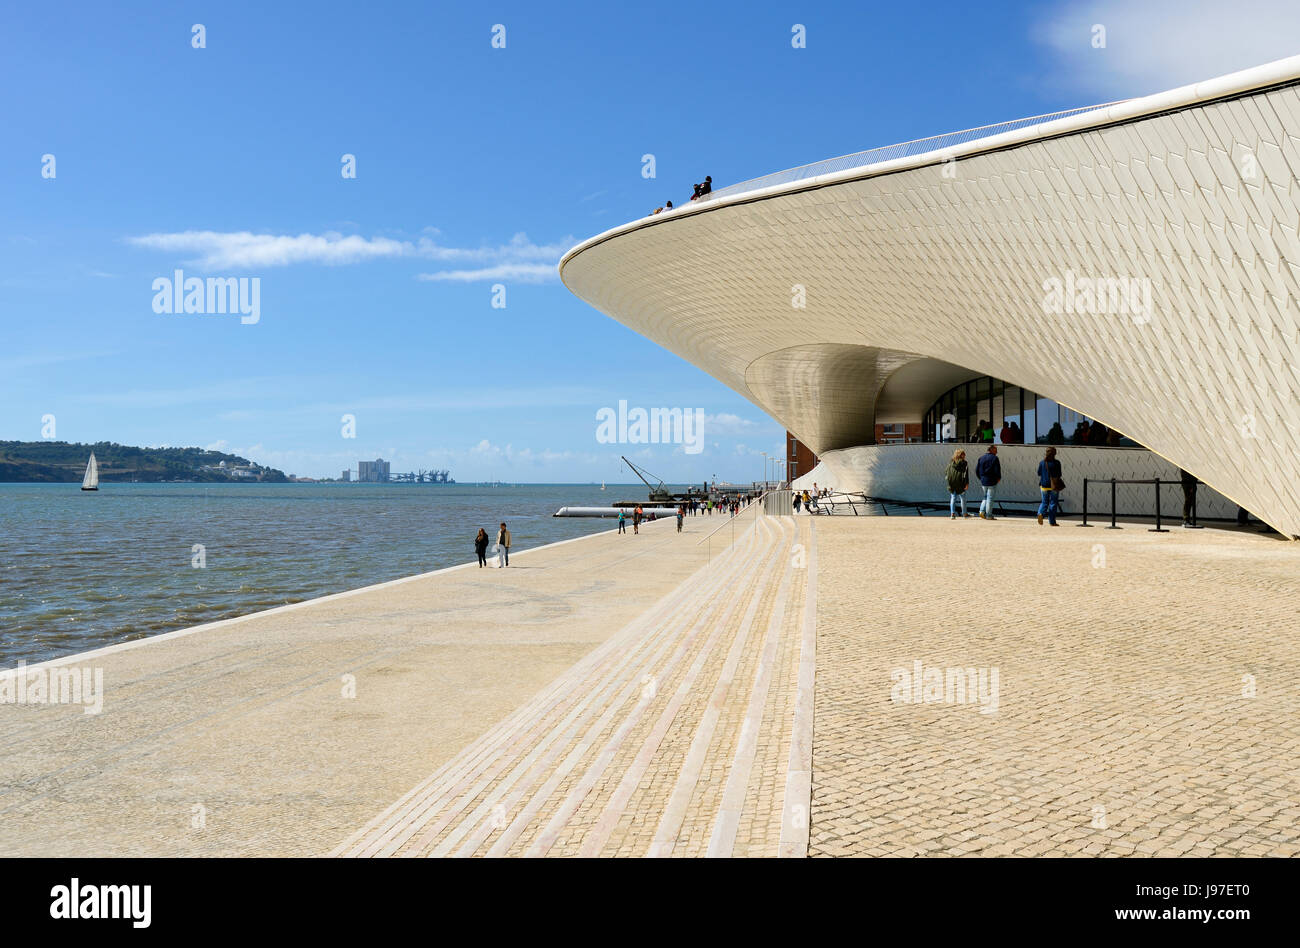 El MAAT (Museo de Arte, Arquitectura y tecnología), bordeando el río Tajo, fue diseñado por el arquitecto británico Amanda Levete. Lisboa, Portugal Foto de stock